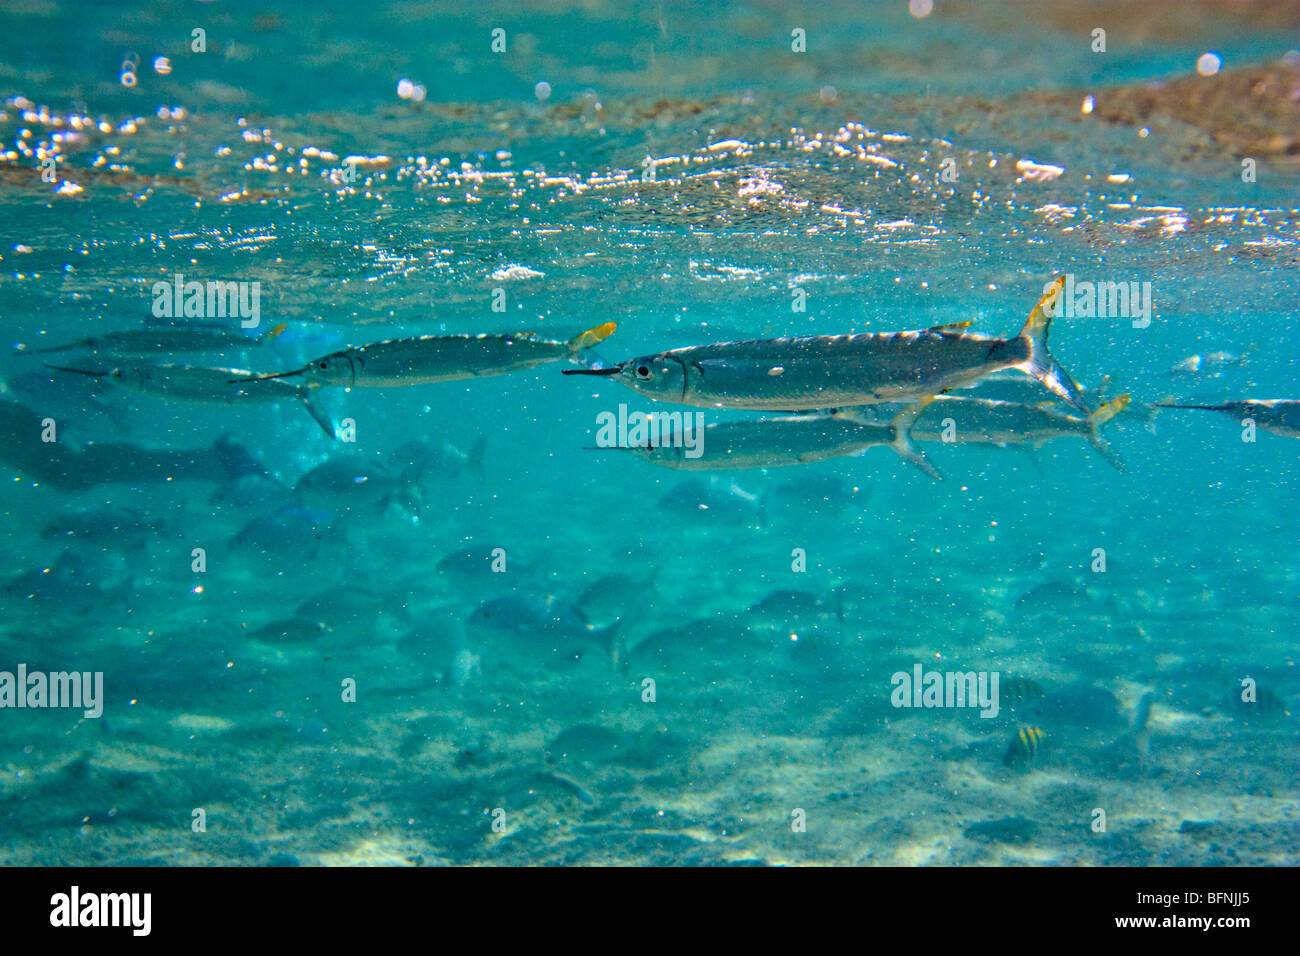 Hemiramphus swimming alongside a school of Ocean Surgeon fish, Atlantic Ocean off Cuban coast Stock Photo